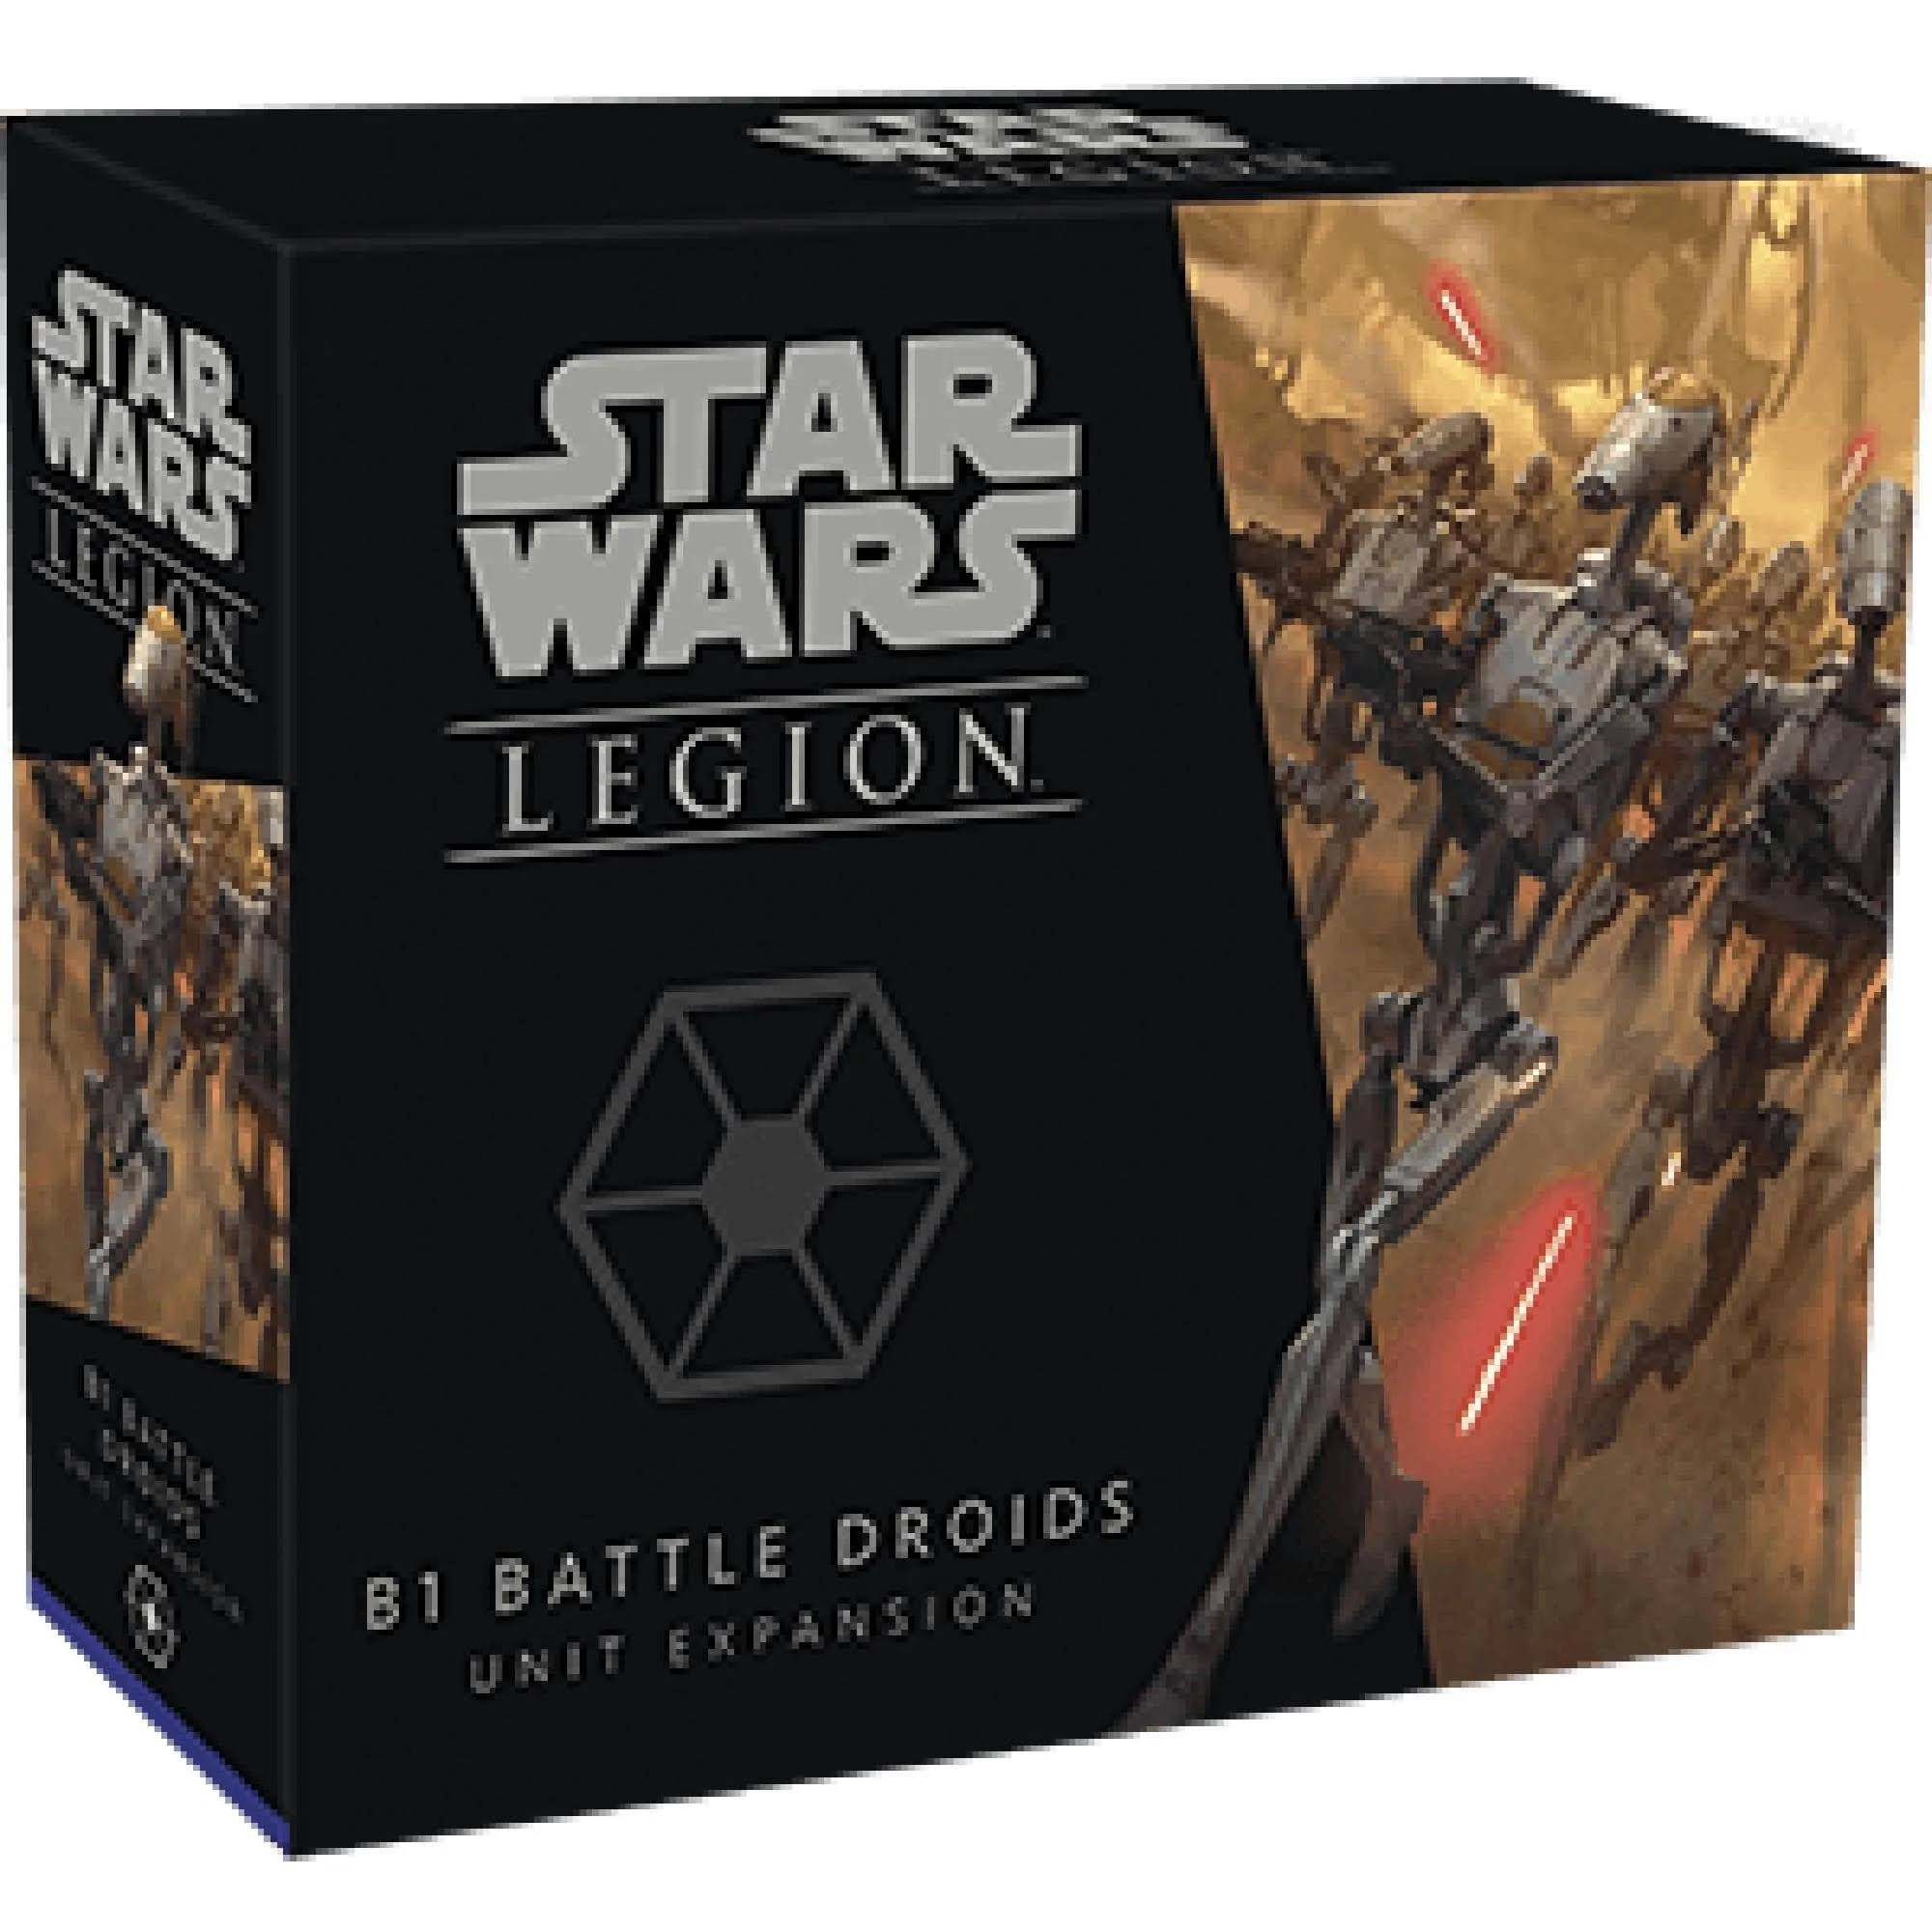 Star Wars: Legion B1 Battle Droids Unit Expansion Games Set